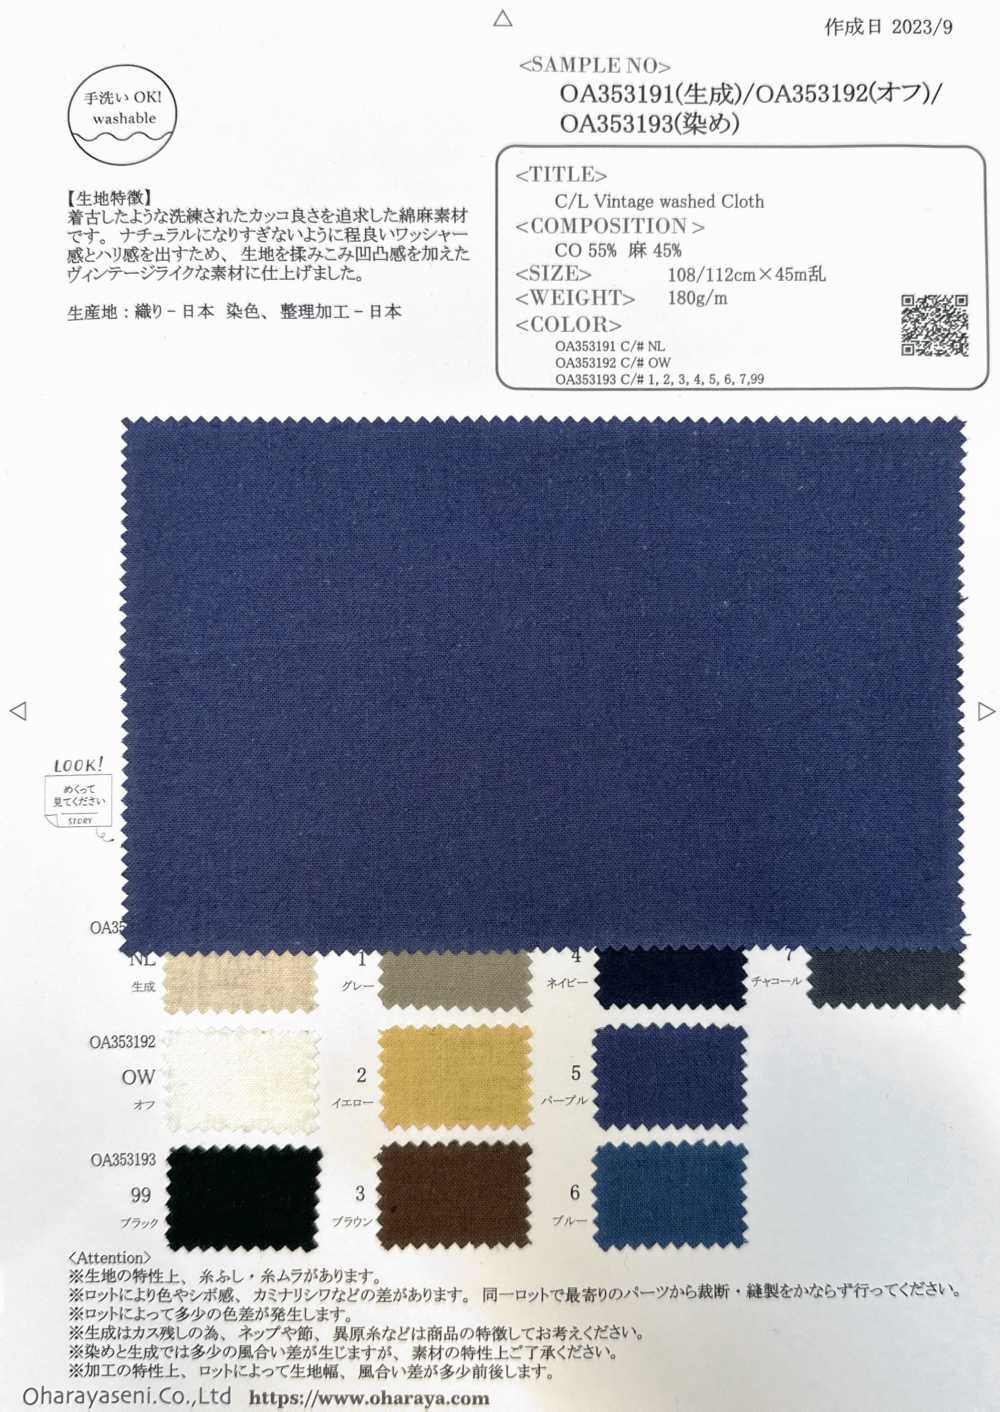 OA353192 C/L Vintage Washed Cloth[Textile / Fabric] Oharayaseni